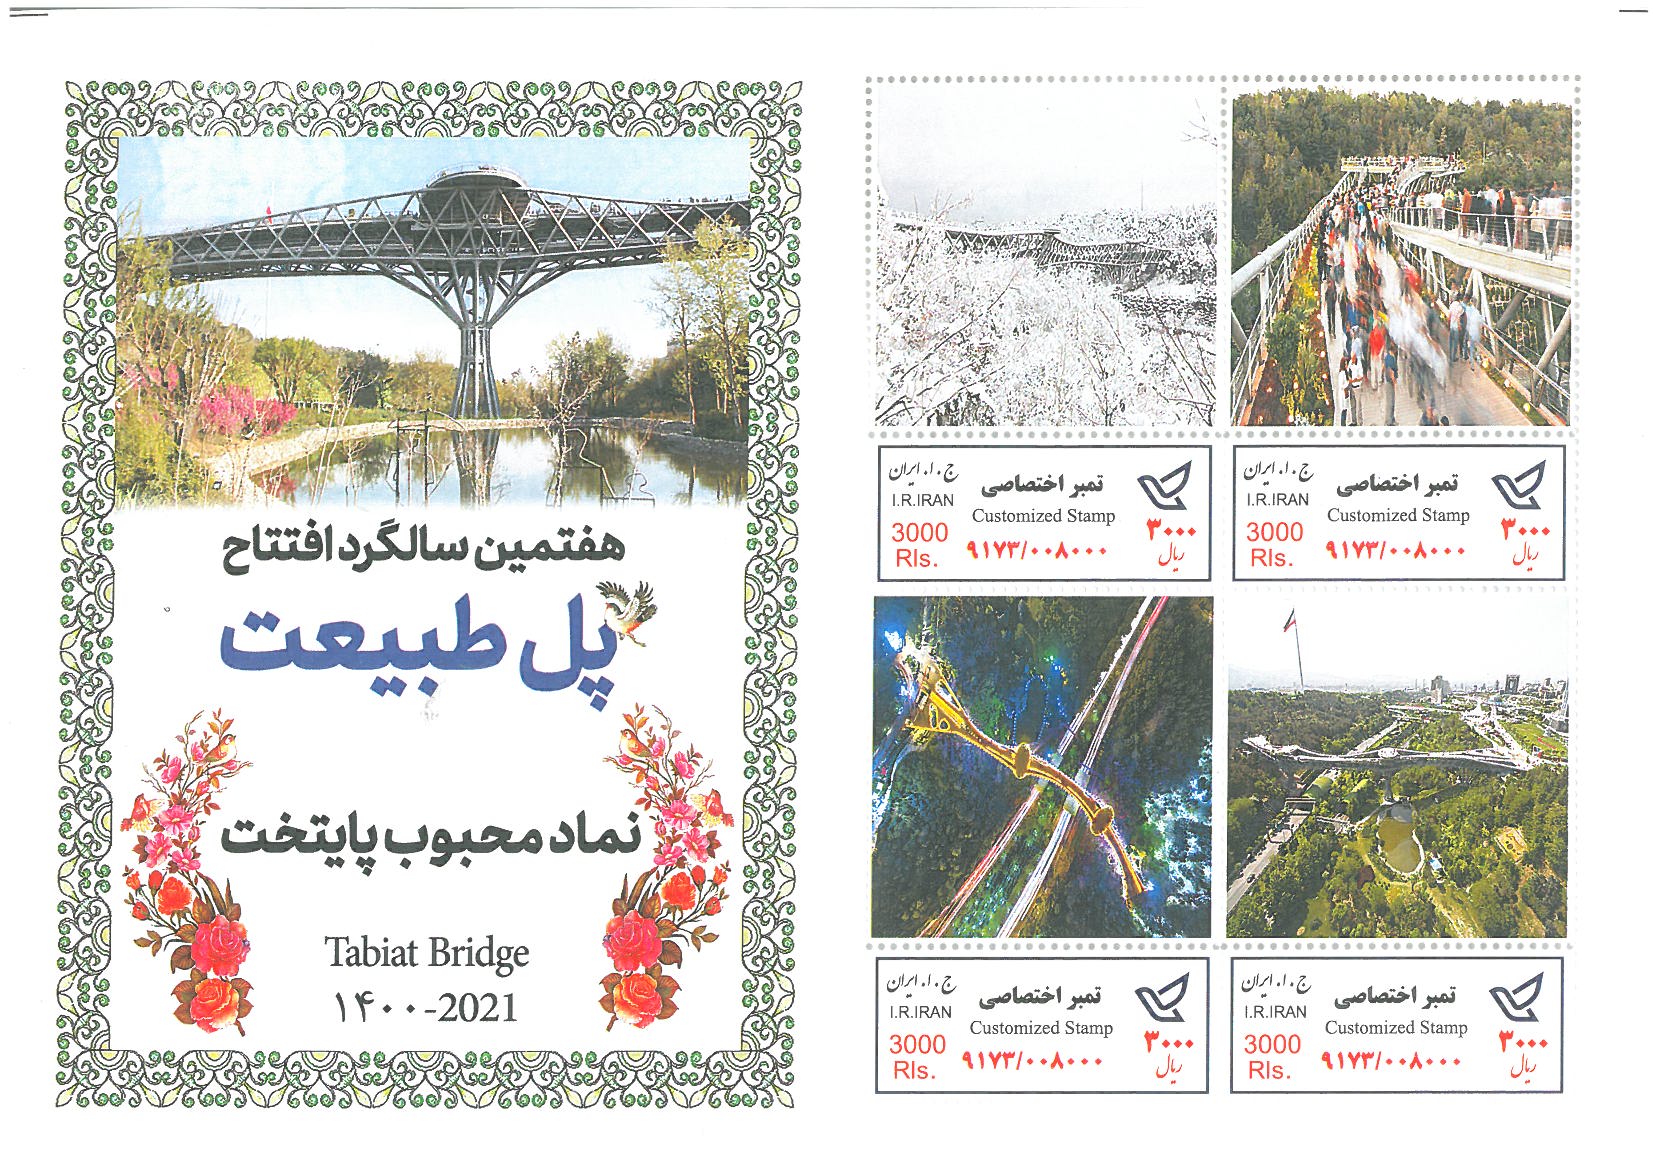 Unveiling of the Tabiat Bridge Stamp